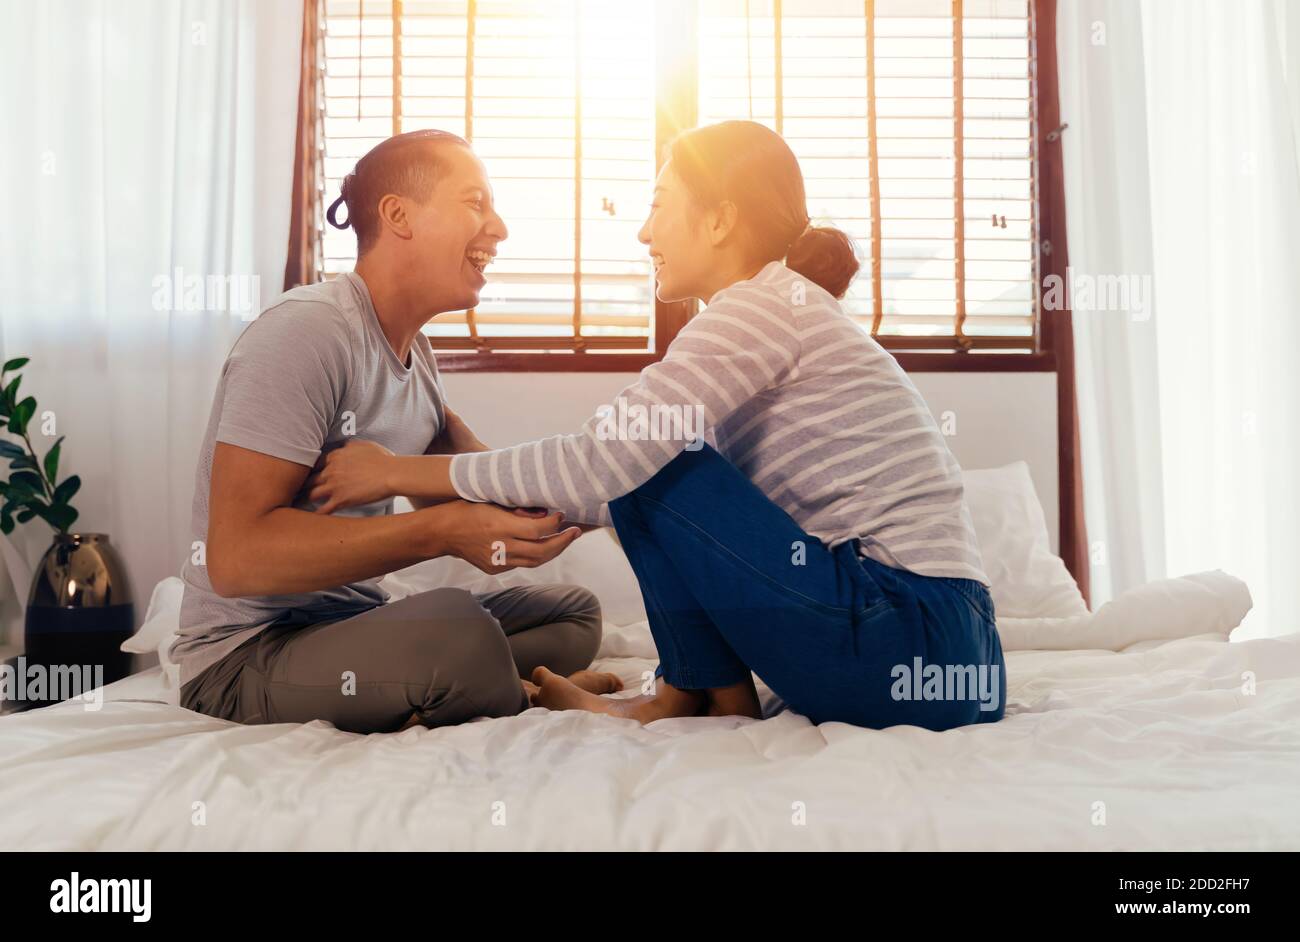 Portrait von glücklich junge Erwachsene asiatische Paar kitzelt sich gegenseitig auf dem Bett zusammen im Schlafzimmer Innenleben Szene. 30s offen reifen Mann und Frau lächeln. Ehe und glückliche Beziehung Leben Konzept. Stockfoto